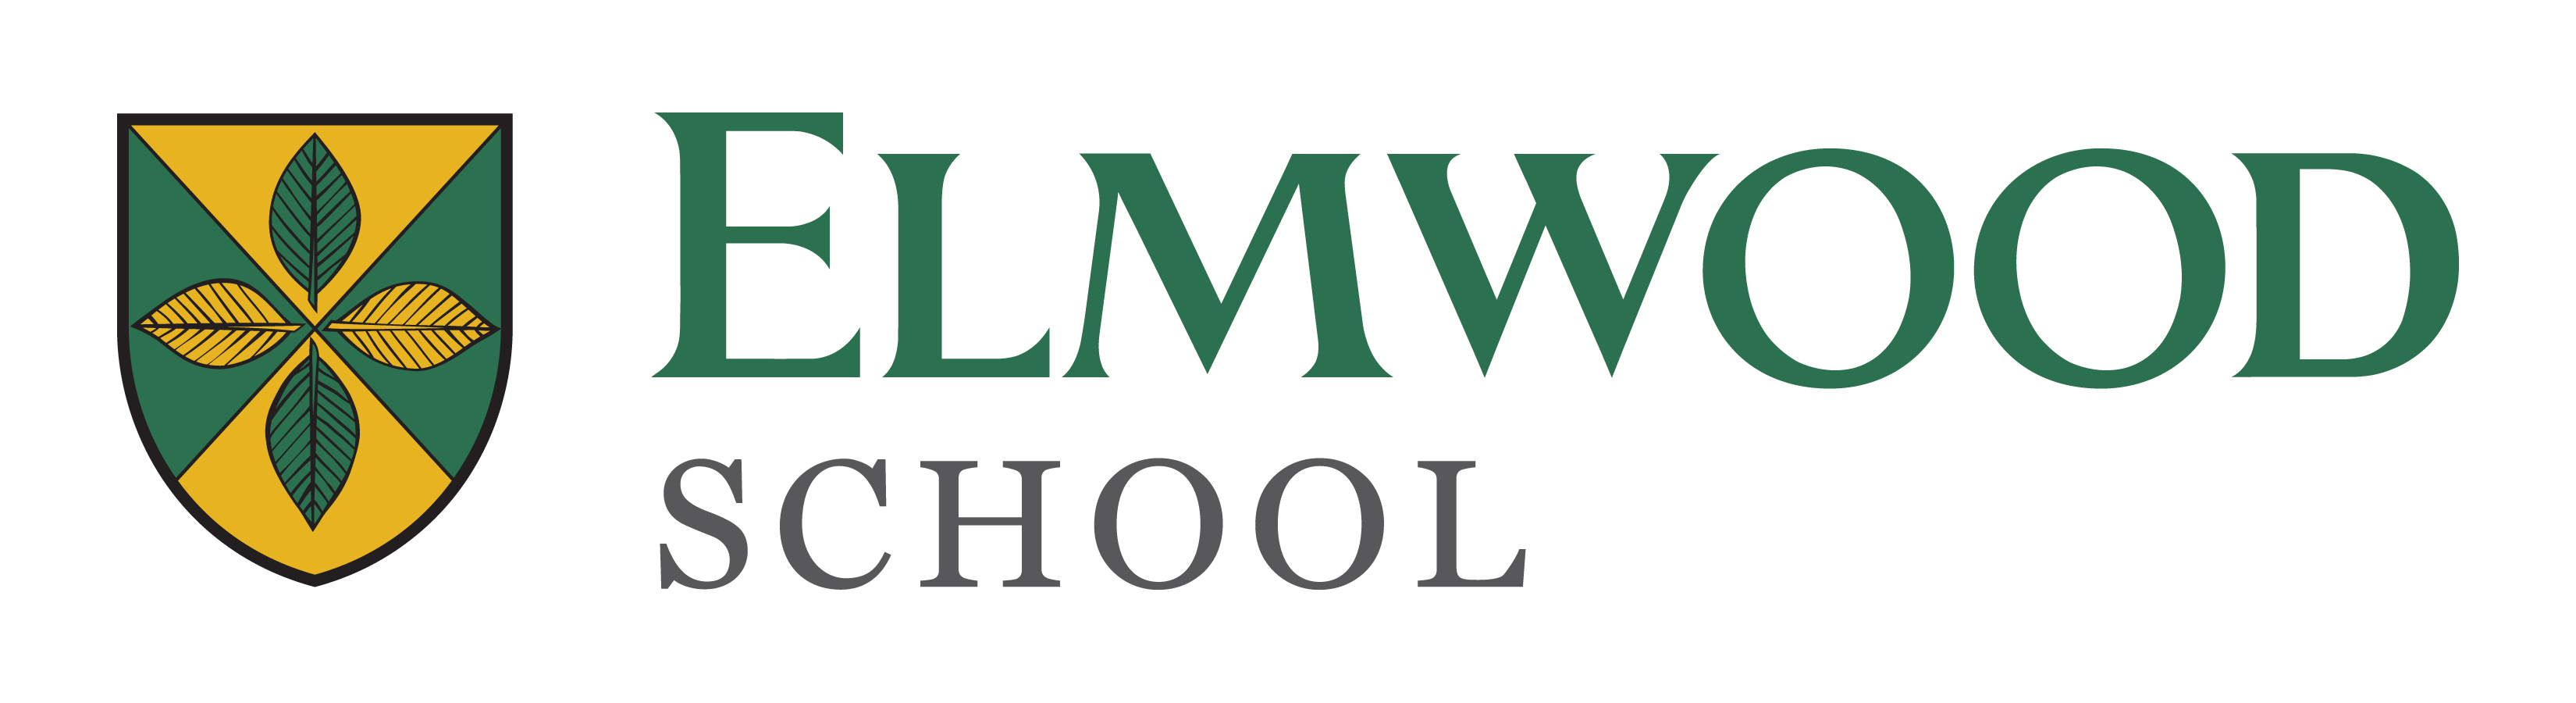 Elmwood Logo